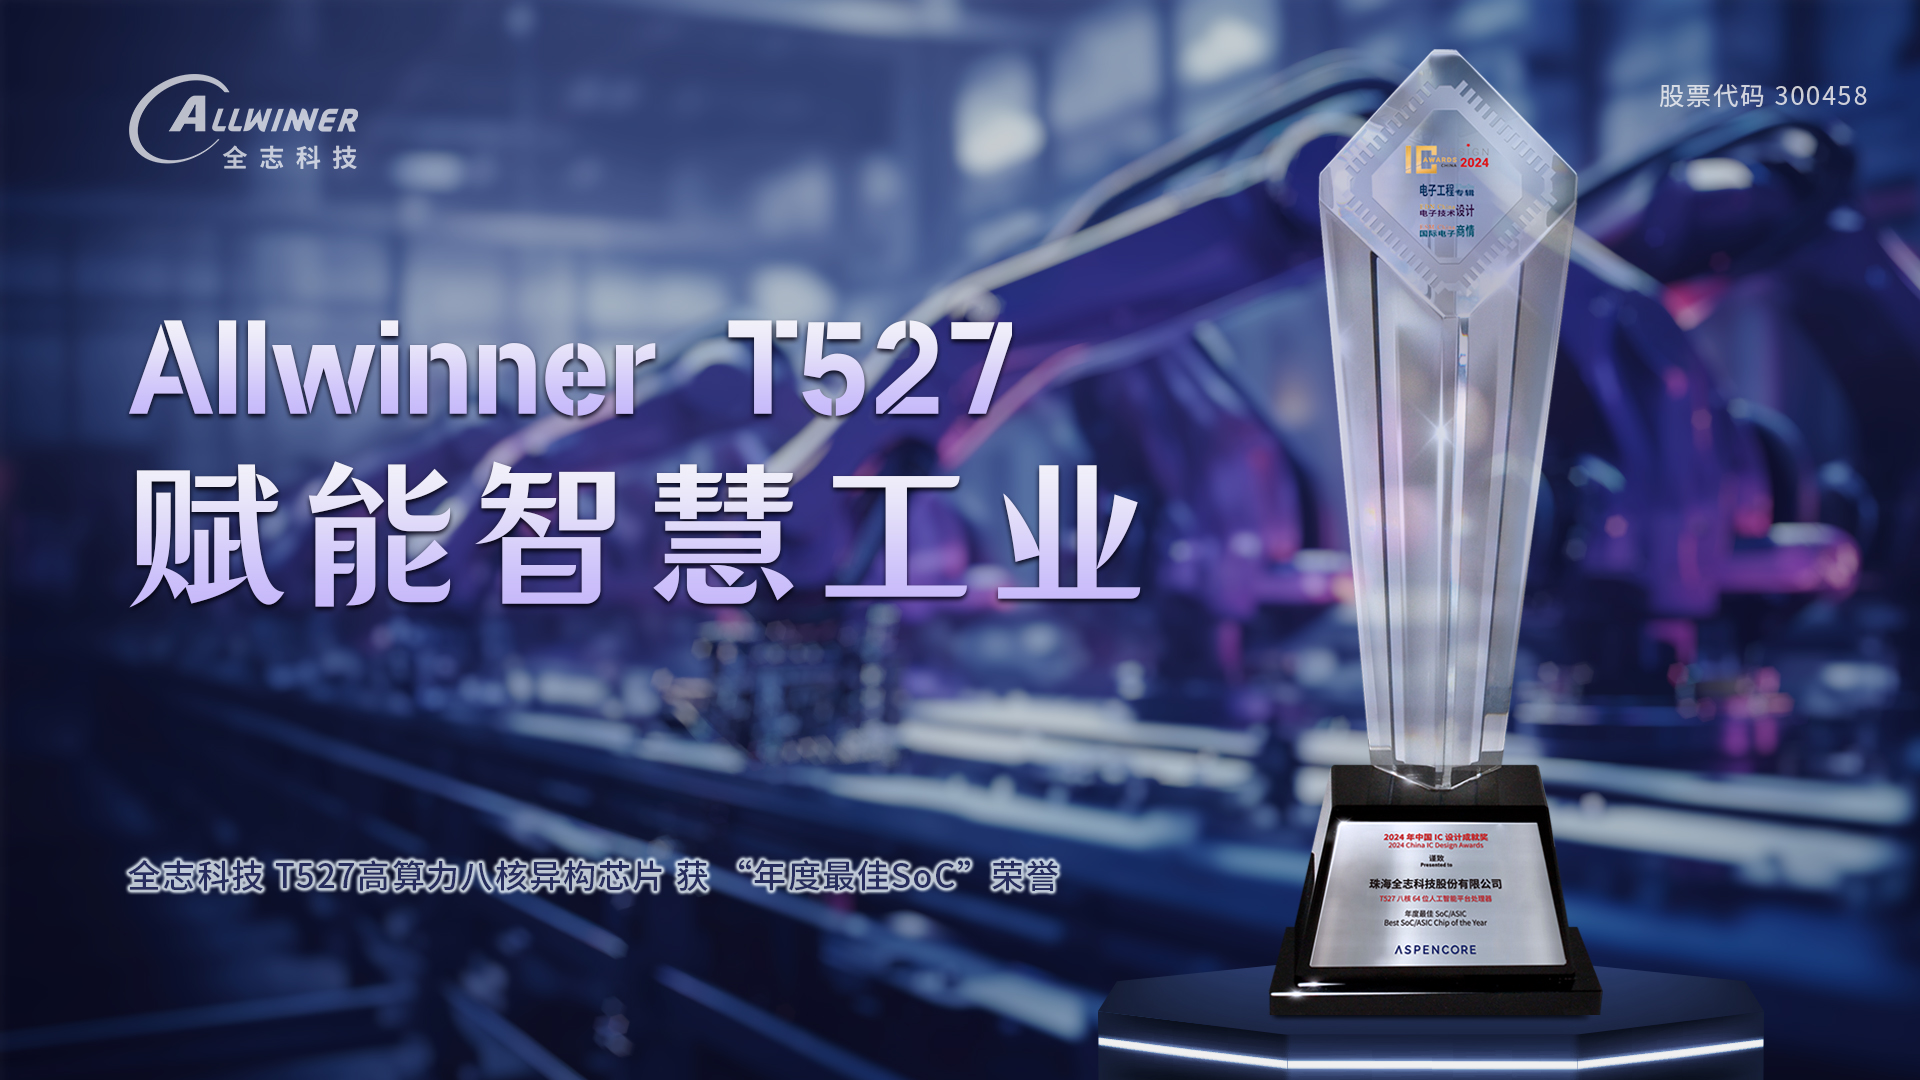 腾博汇游戏官方网站T527 获 “年度最佳SoC” 荣誉